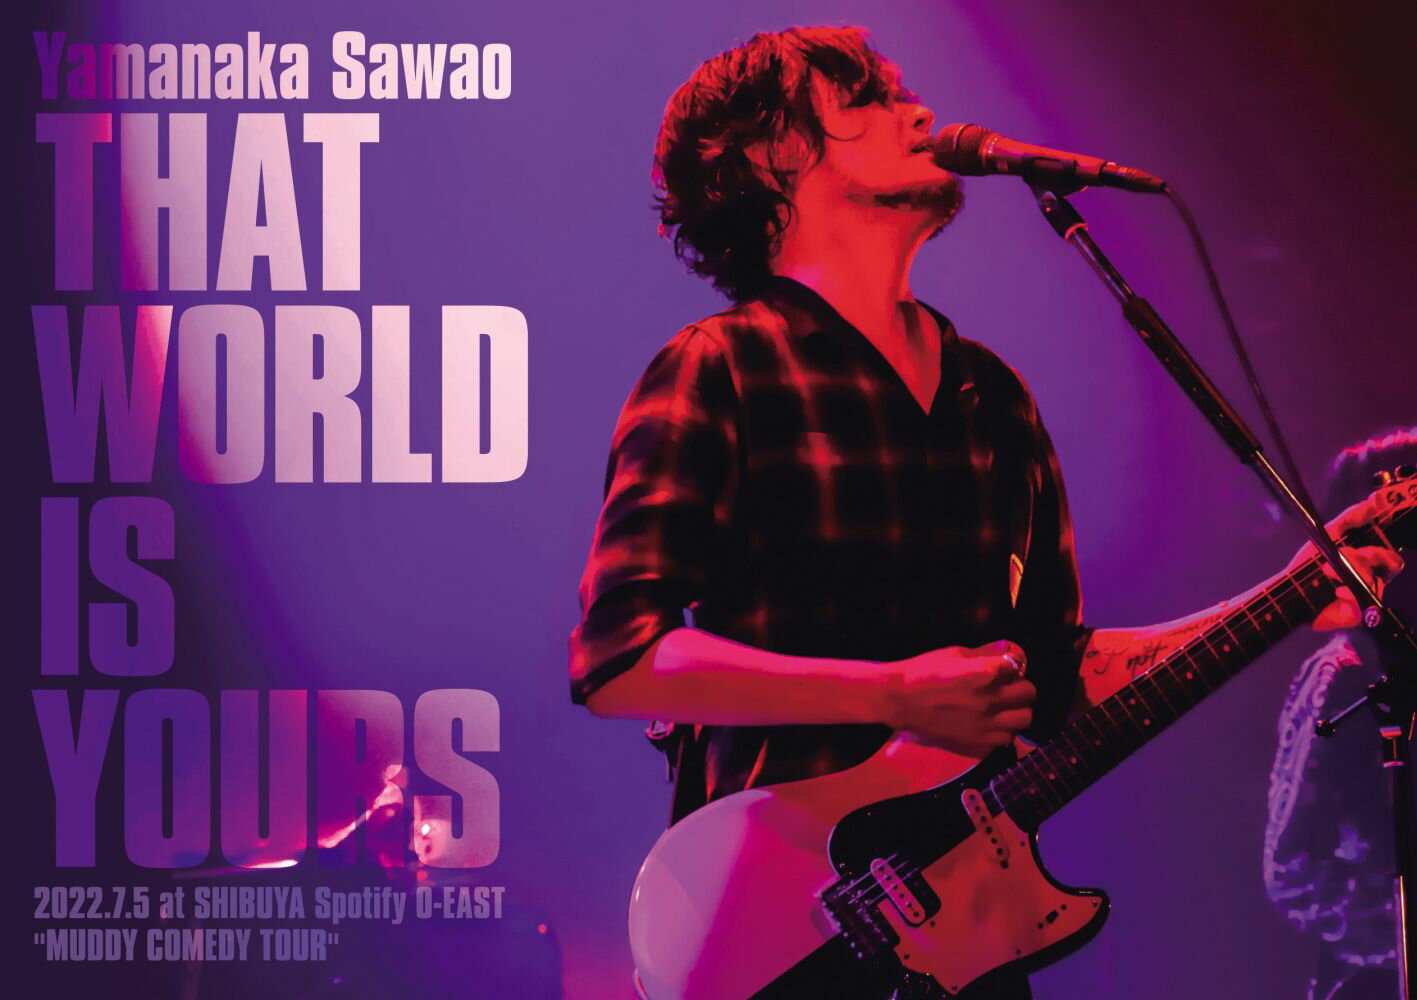 楽天楽天ブックスTHAT WORLD IS YOURS 2022.7.5 at SHIBUYA Spotify O-EAST “MUDDY COMEDY TOUR